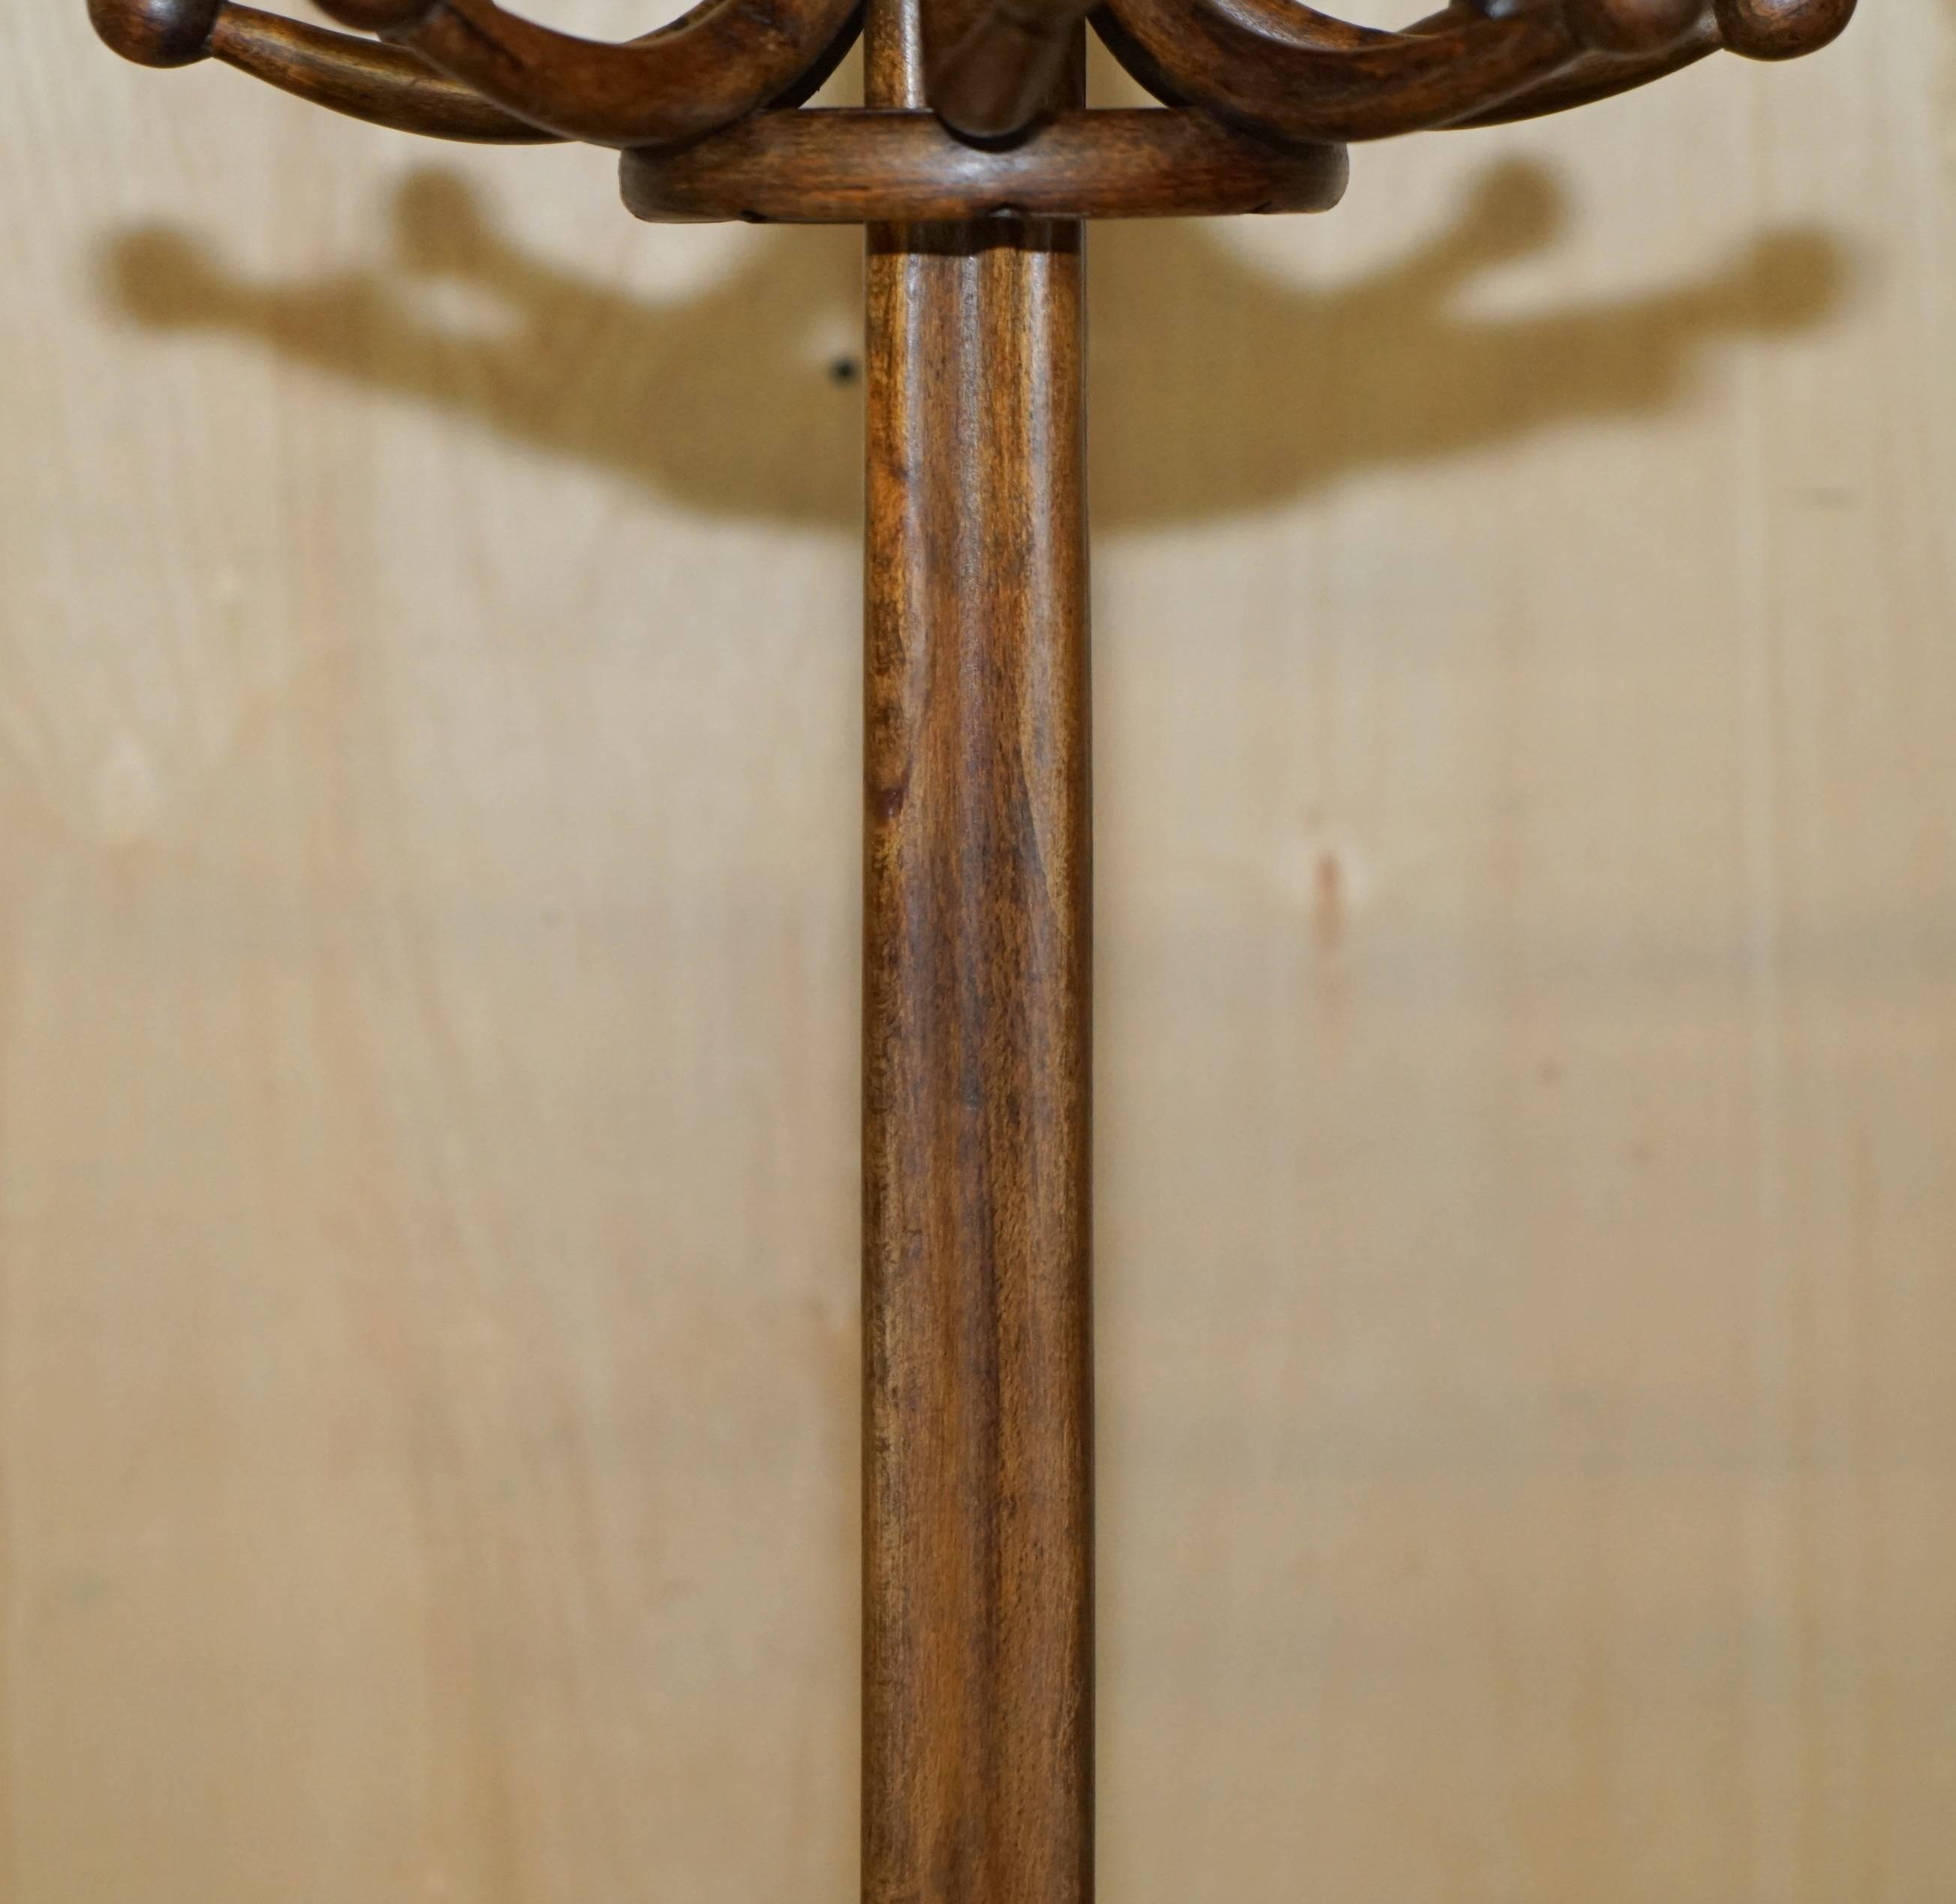 ORIGINAL CIRCA 1880's THONET BENTWOOD HAT COAT & SCARF FLOOR STANDING RACK 4